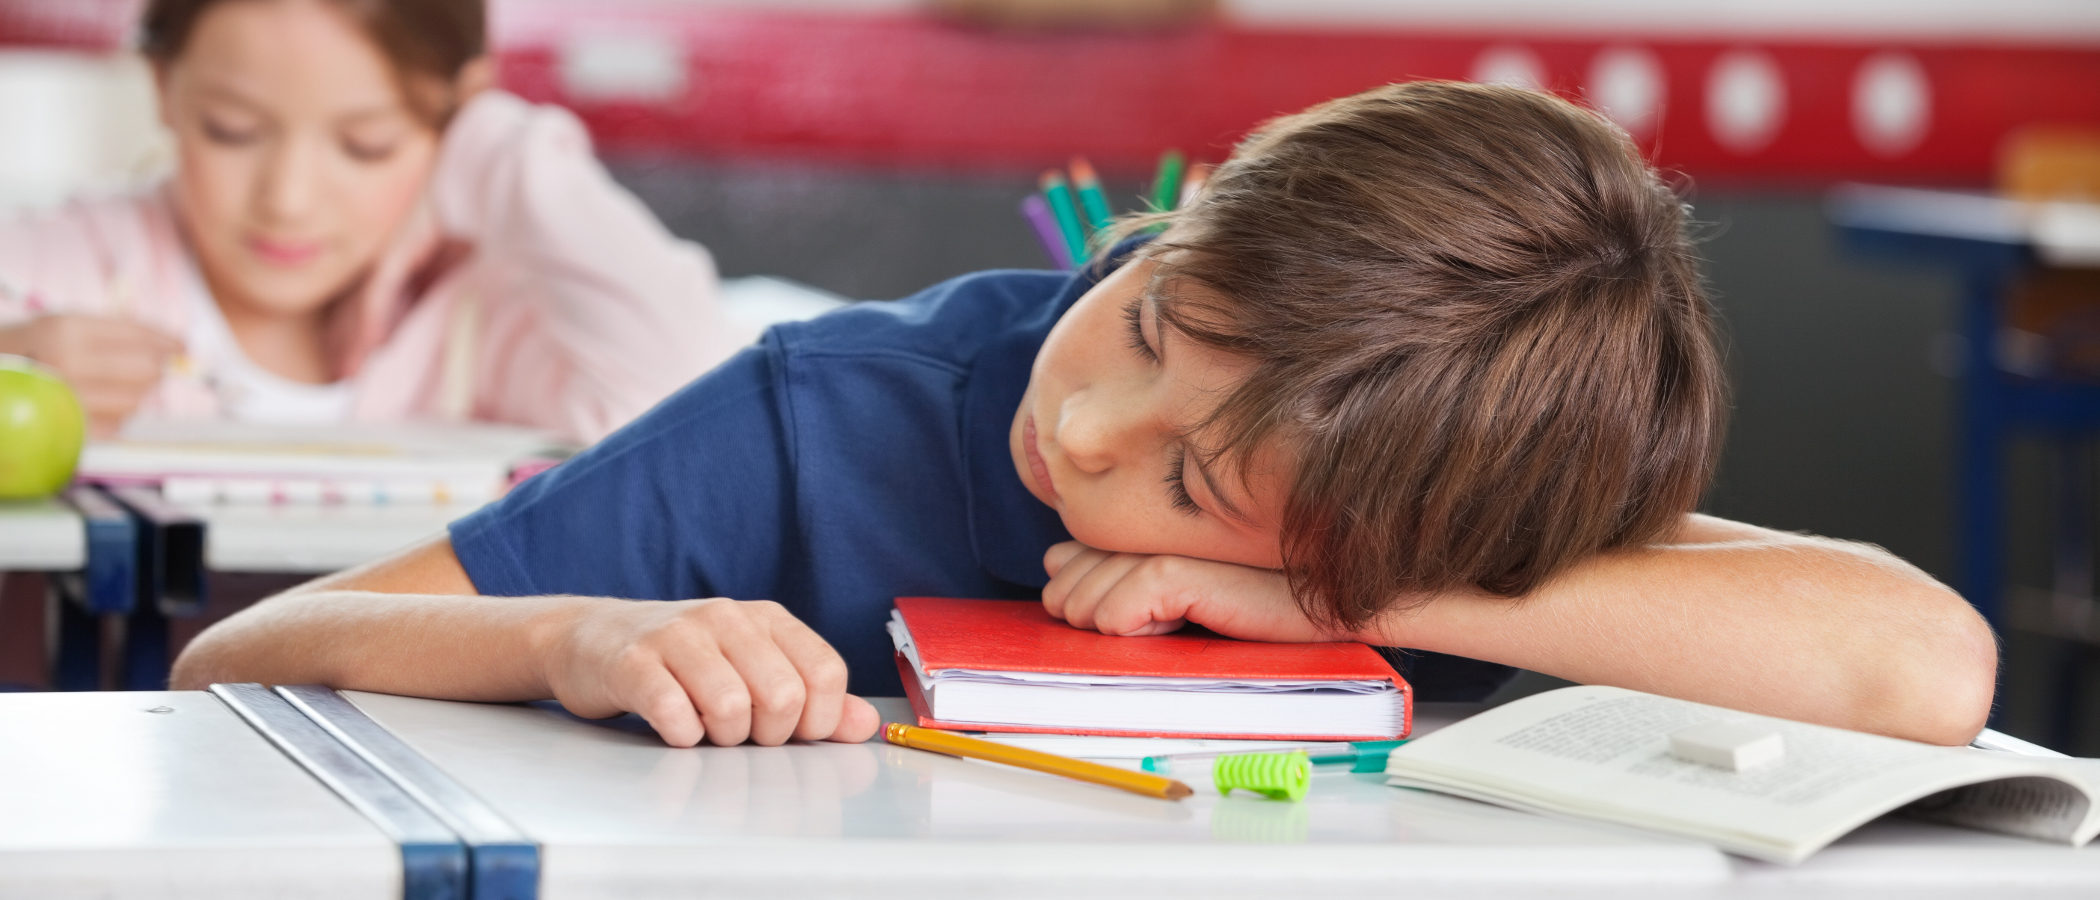 Signos que indican que un niño o niña no descansa bien